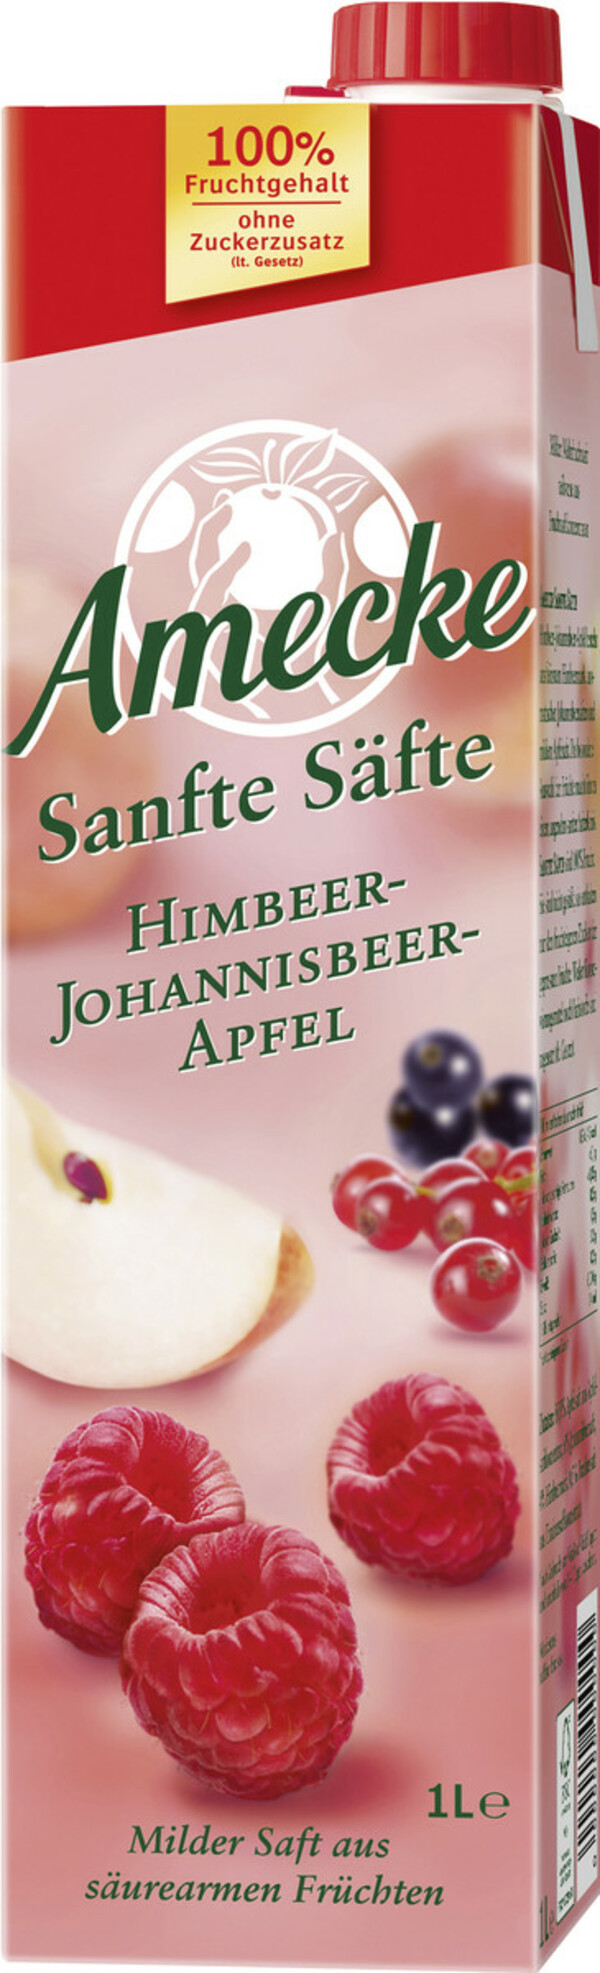 Bild 1 von Amecke Sanfte Säfte Himbeer-Johannisbeer-Apfel 1 ltr